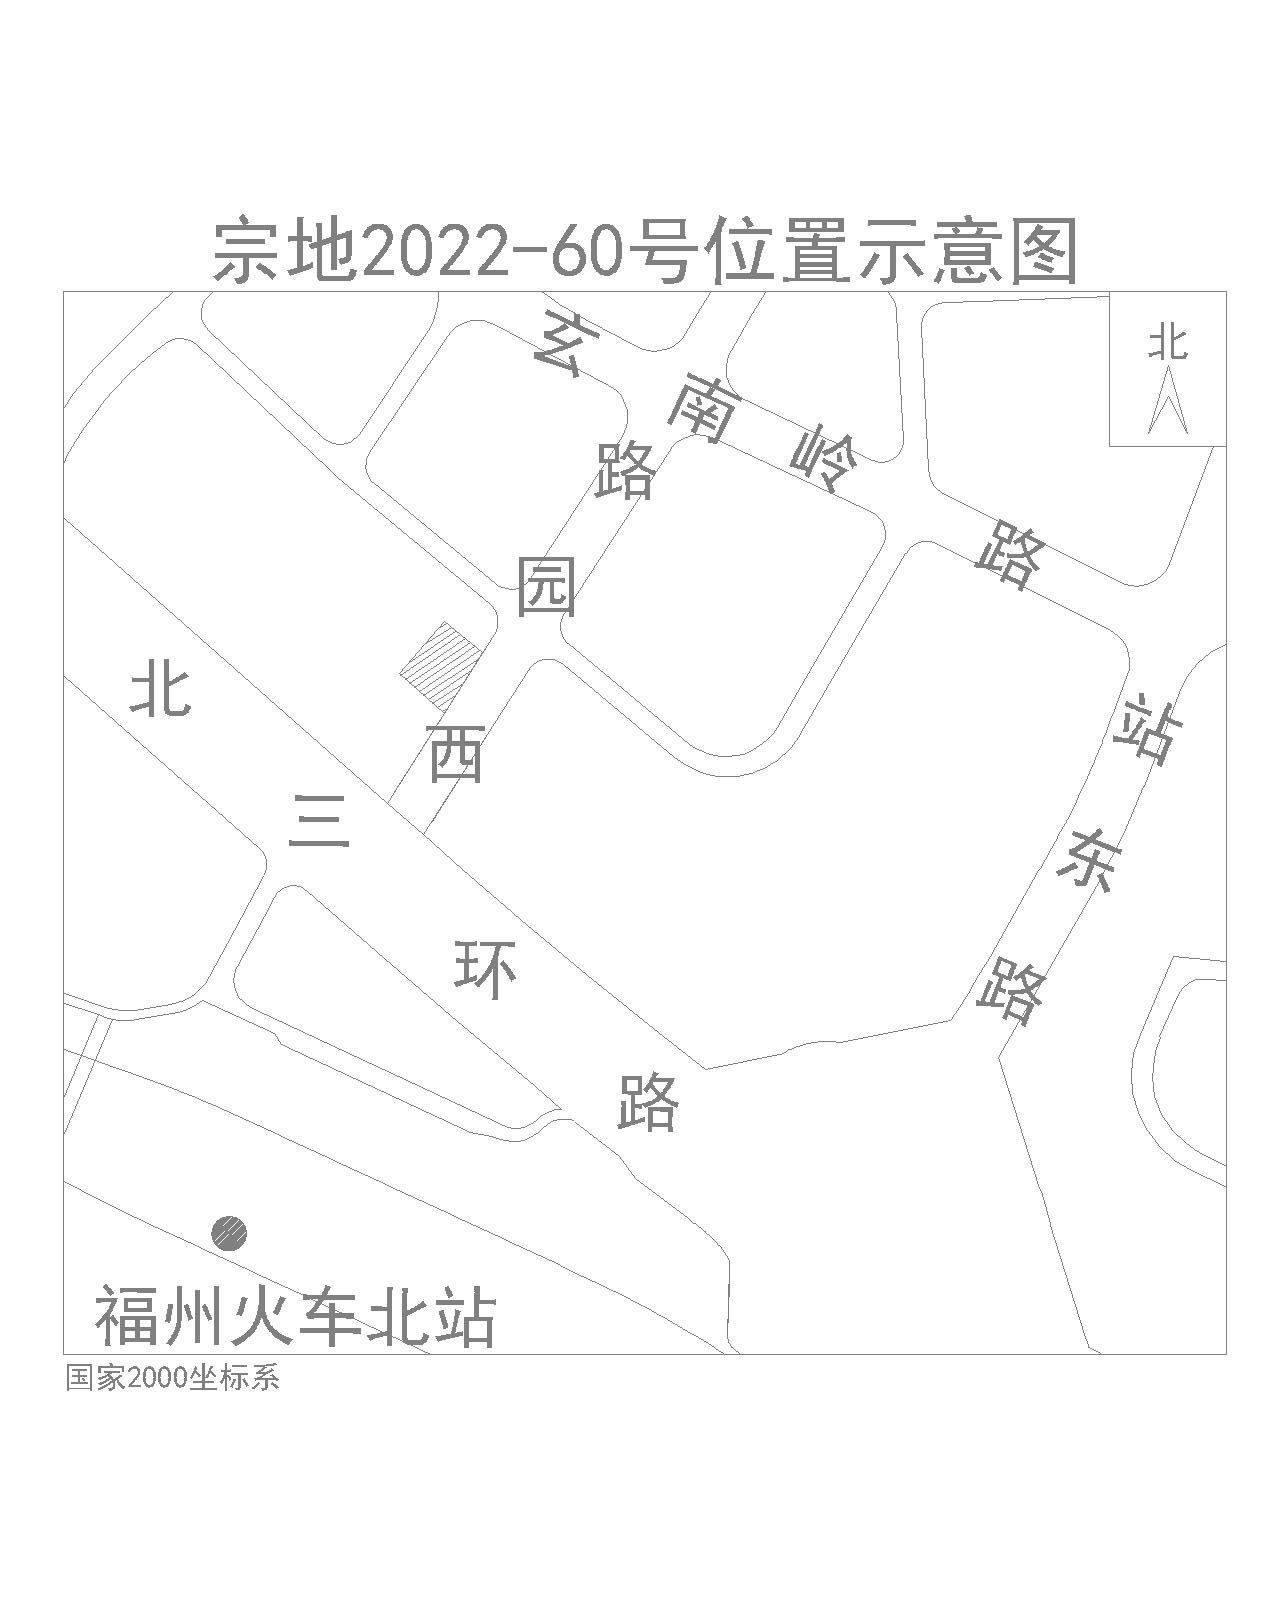 2022年福州第四次土拍公告发布 上海西新村三地块入围